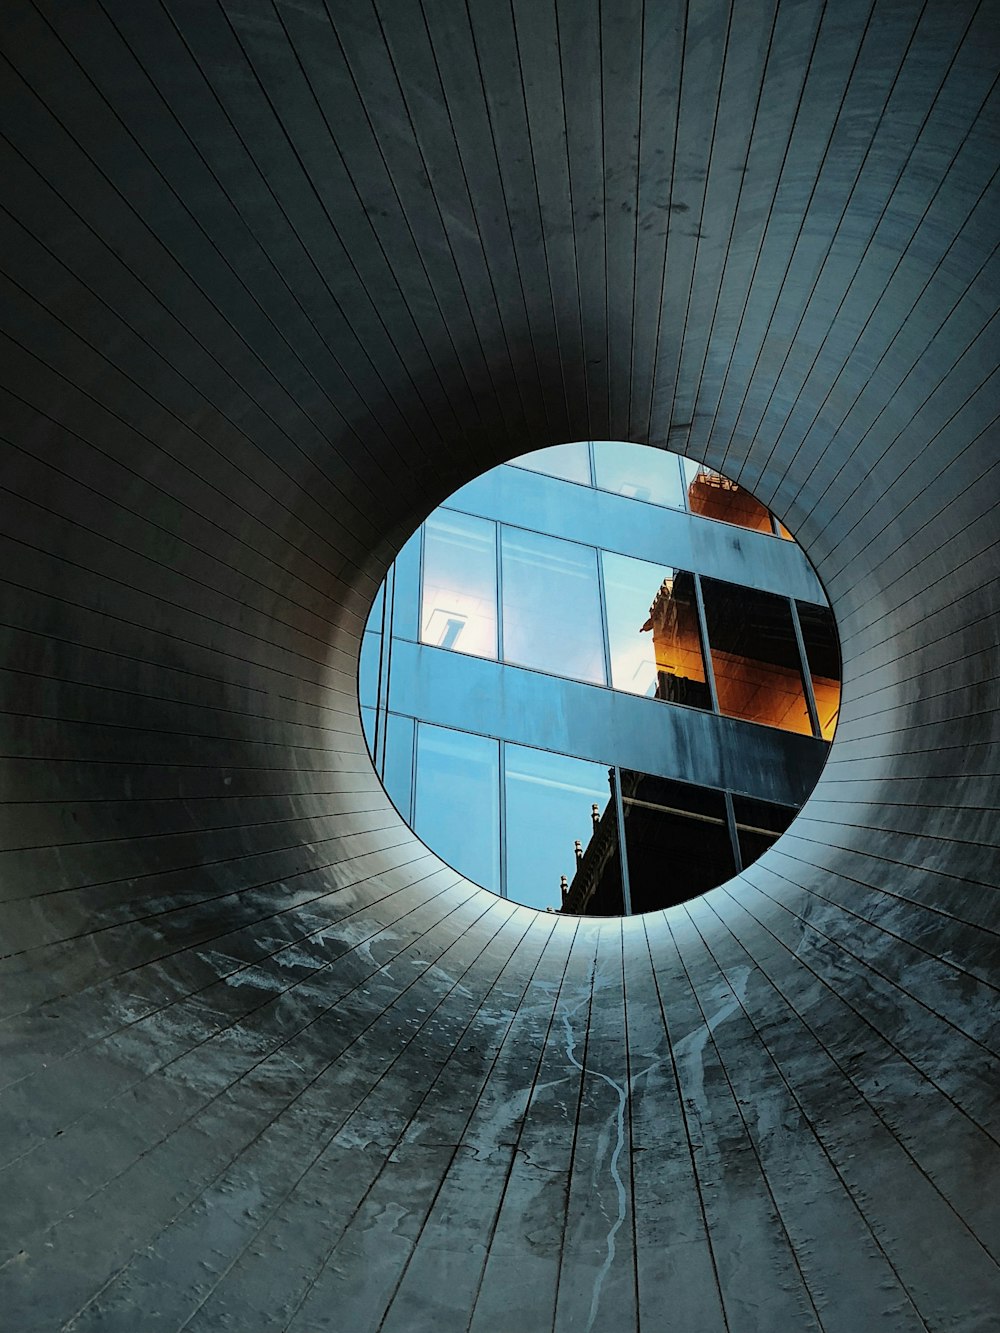 회색 콘크리트 구멍의 원통형 사진